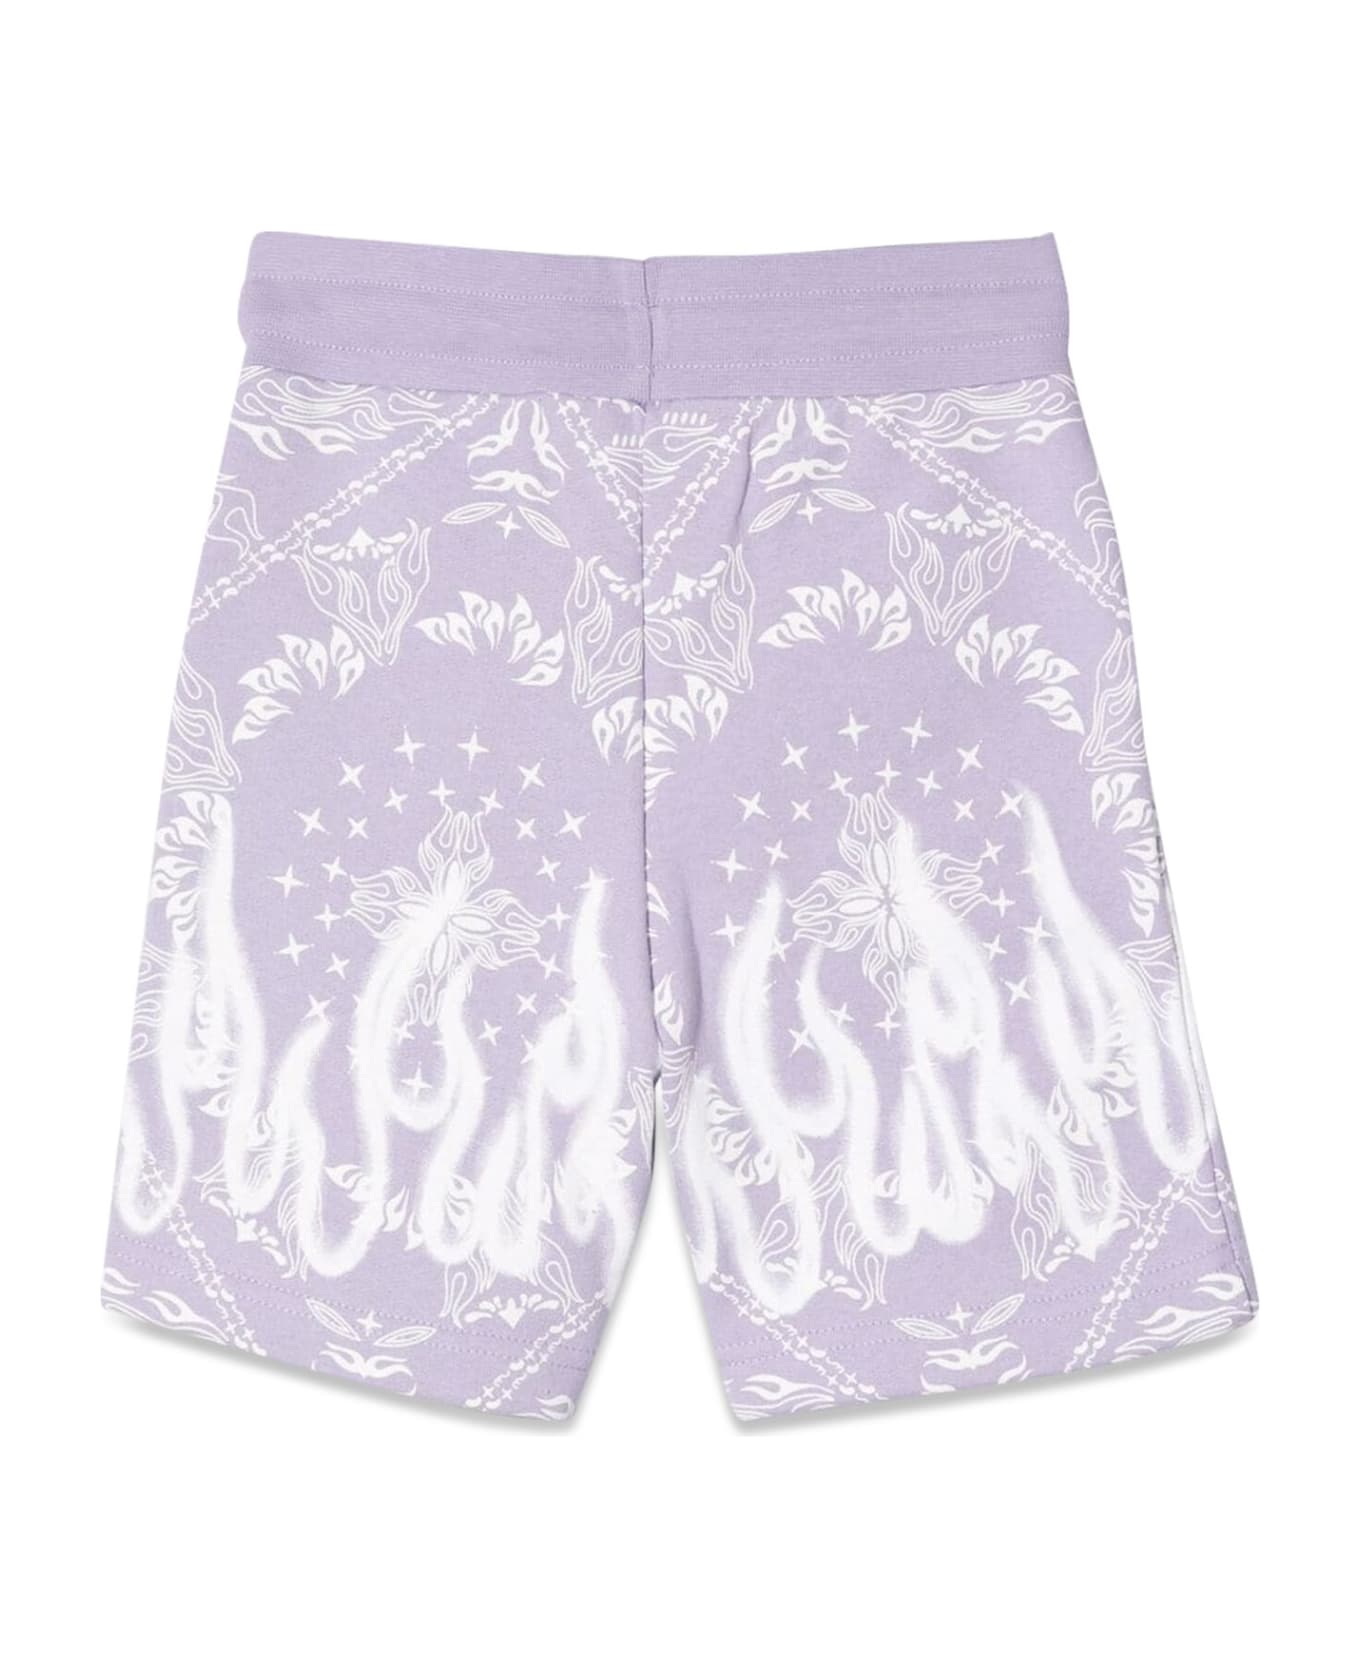 Vision of Super Lilac Shorts Kids With Bandana Print - LILLA